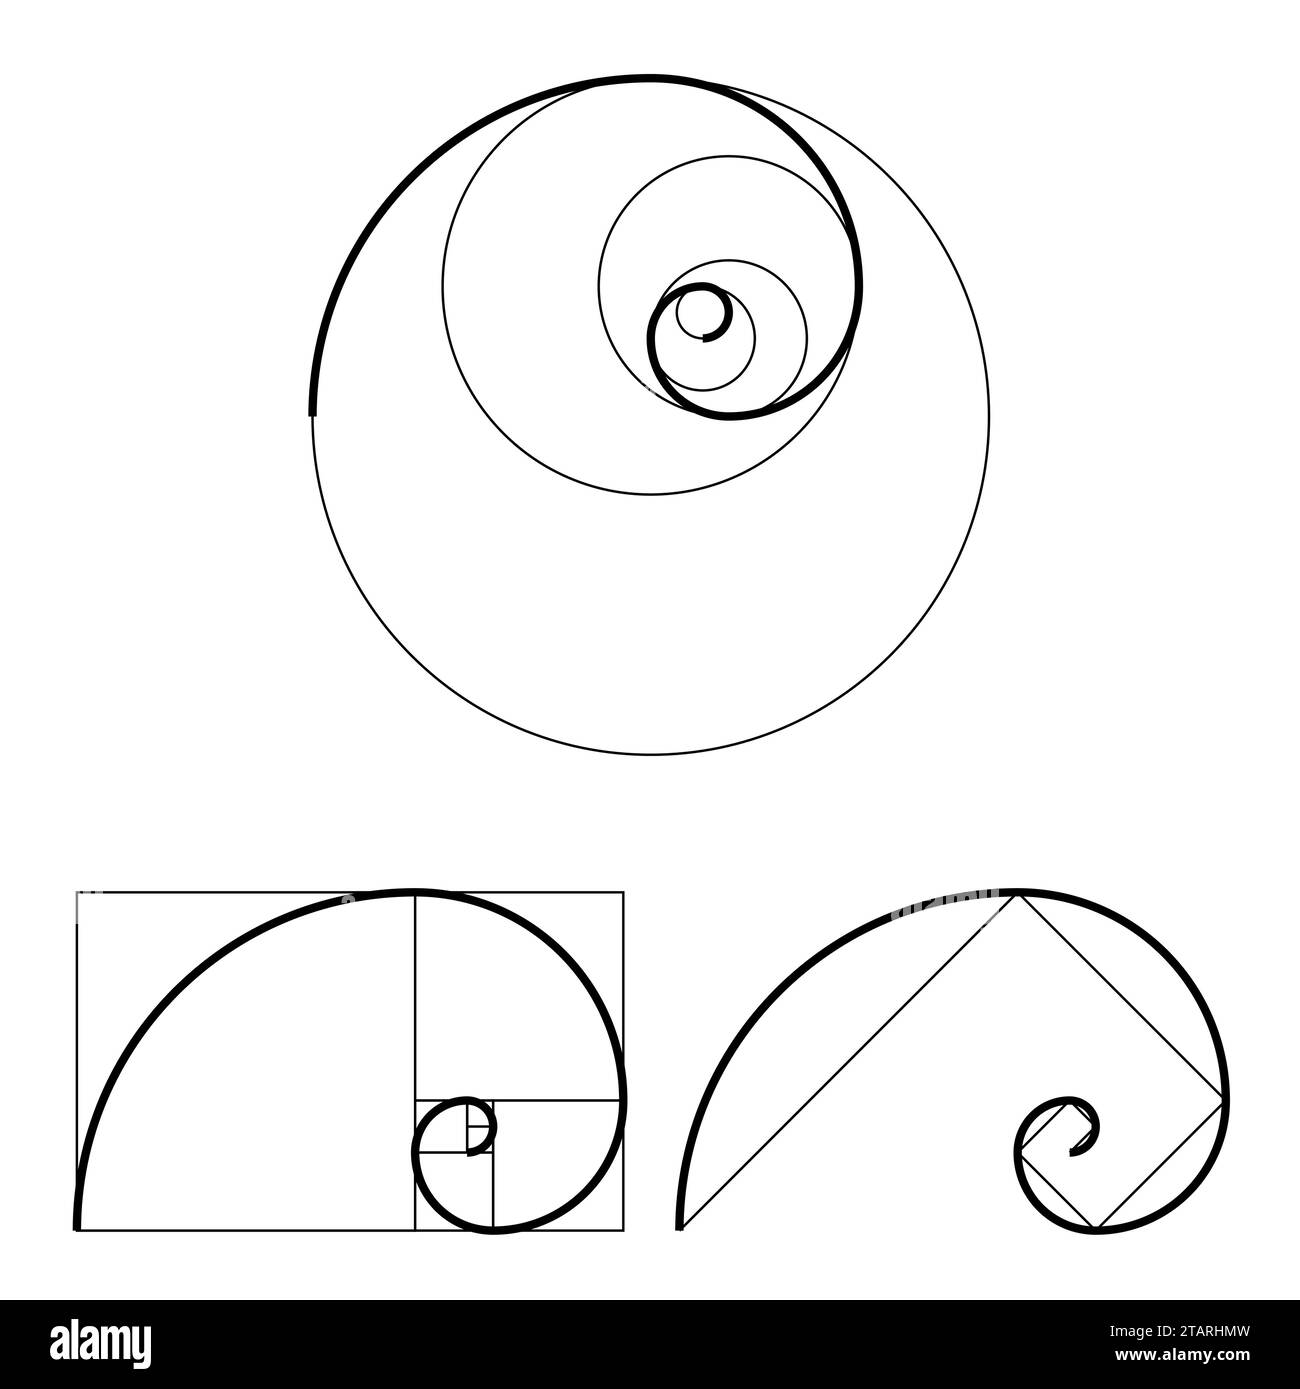 Set di modelli Golden ratio. Simbolo di proporzione. Elemento di progettazione grafica. Spirale sezione dorata. Illustrazione vettoriale Illustrazione Vettoriale